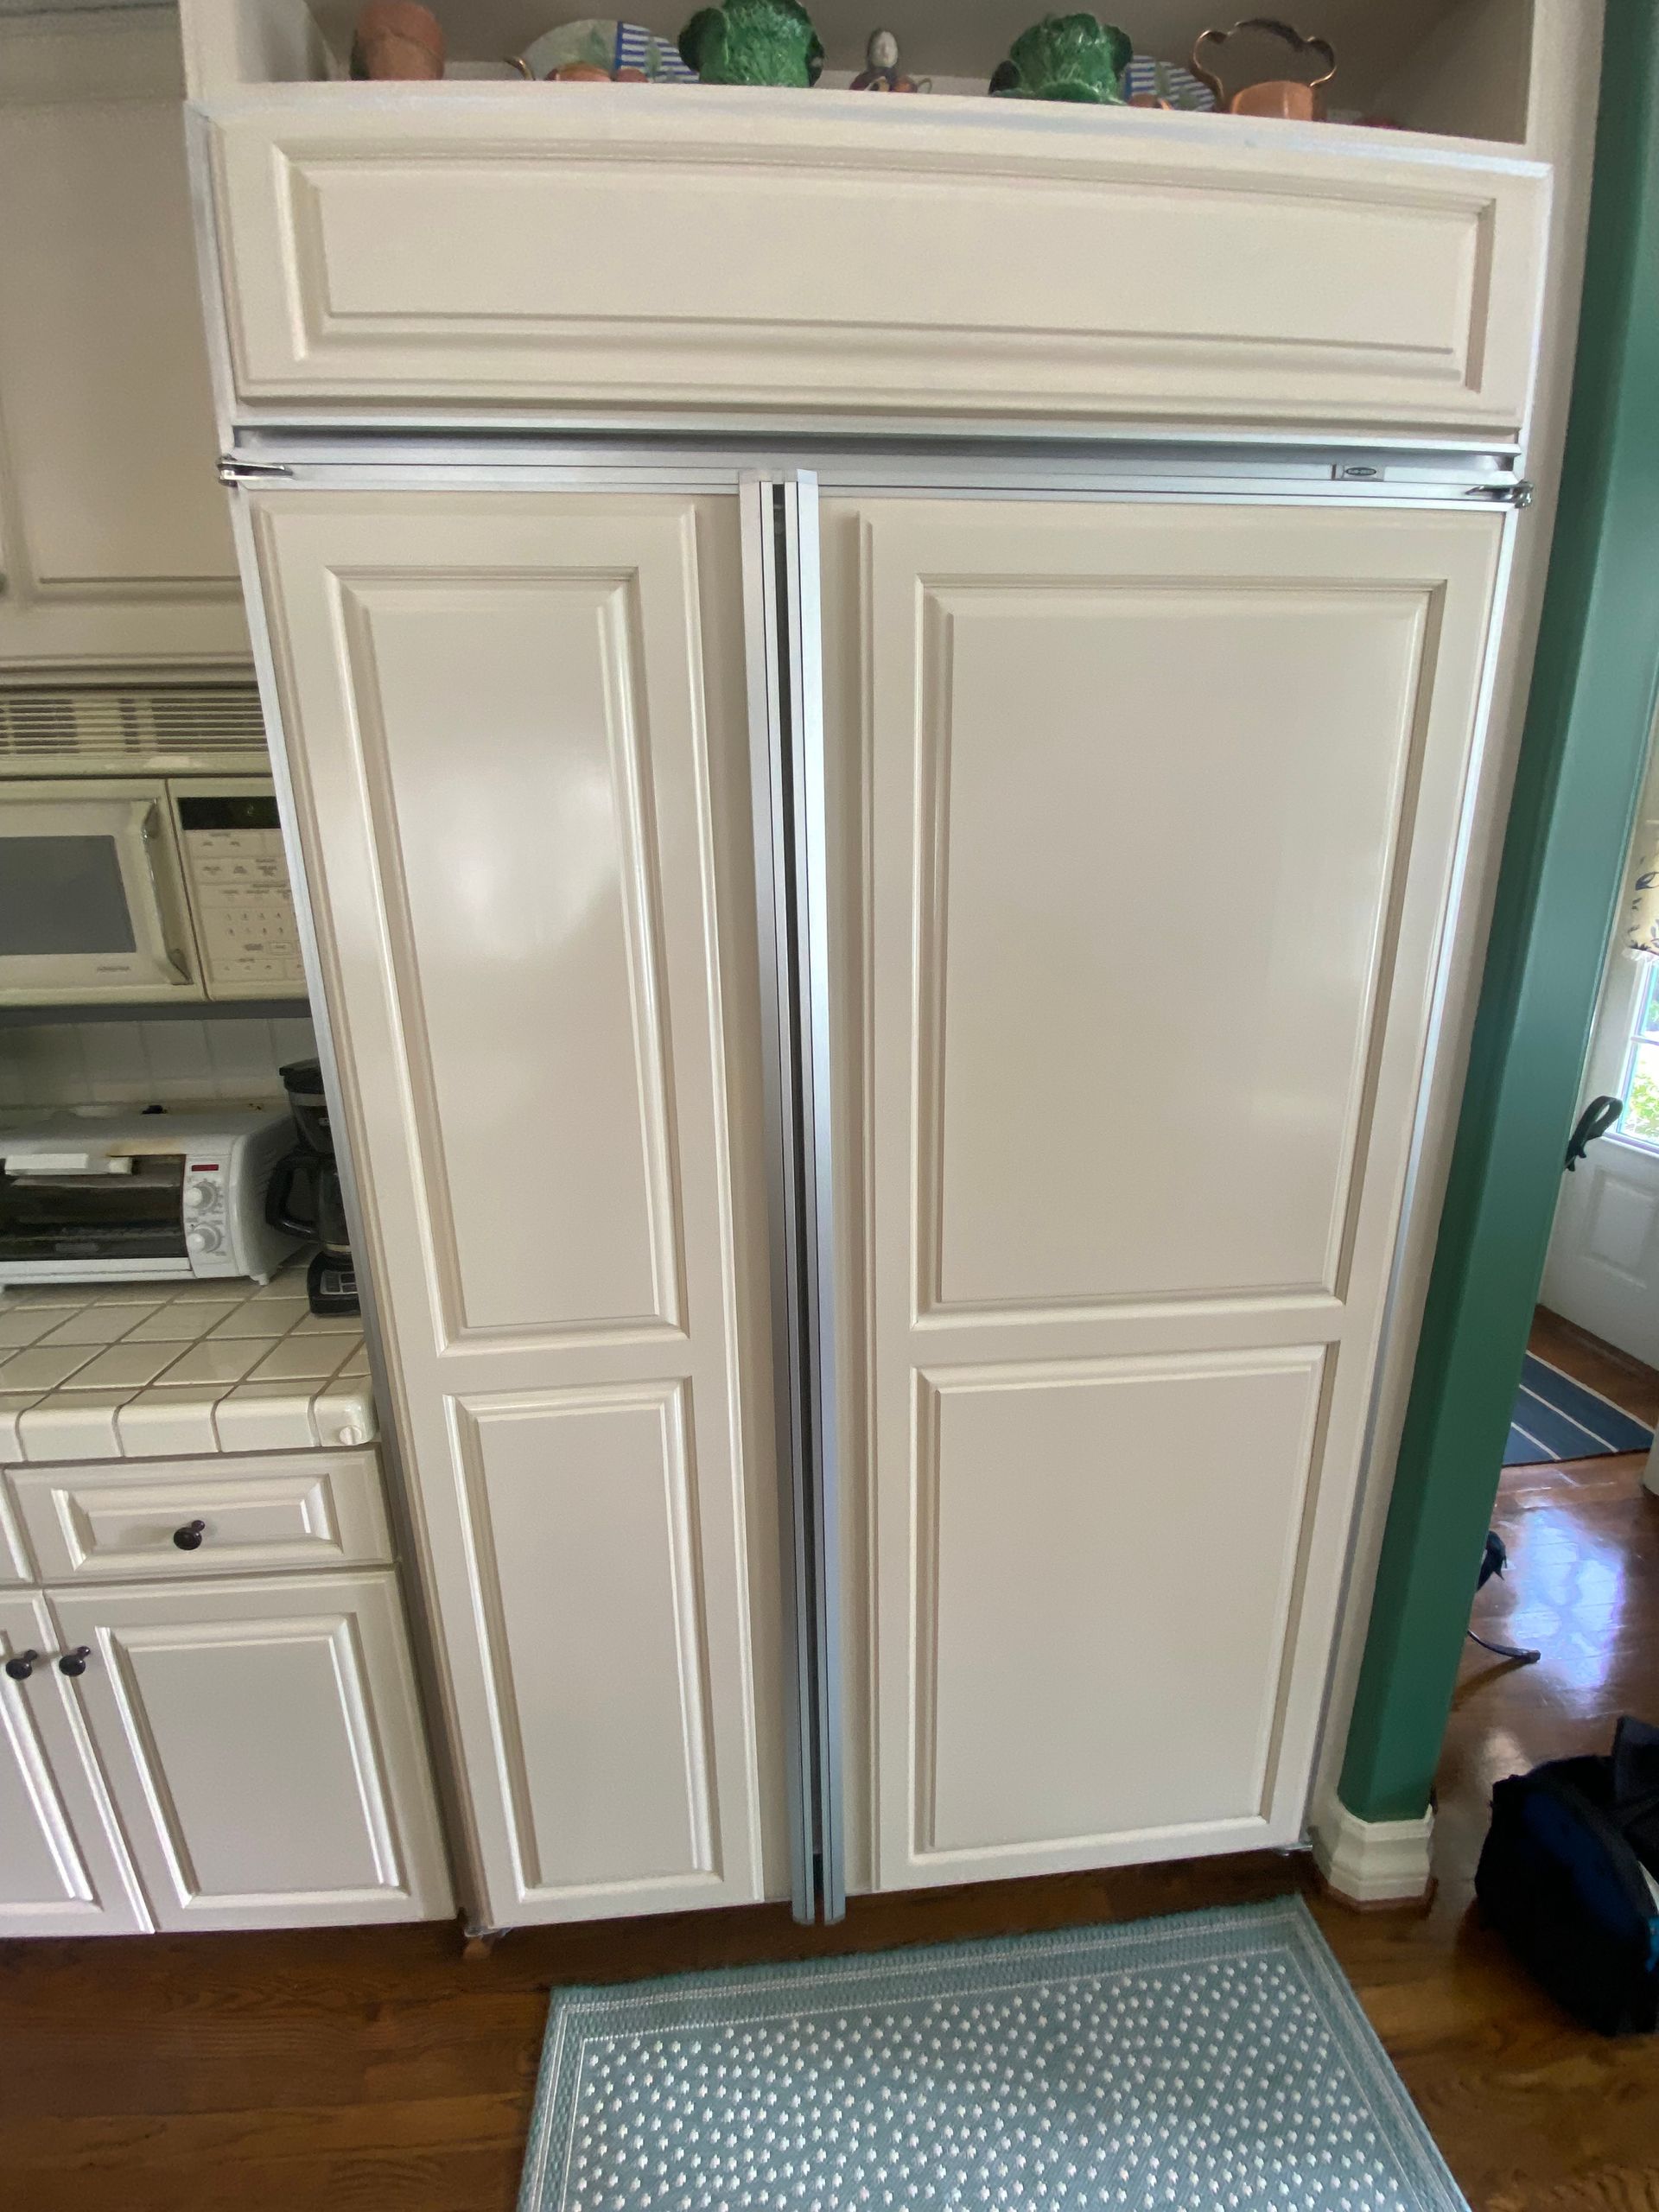 Sub-zero refrigerator repair Level Appliance Repair